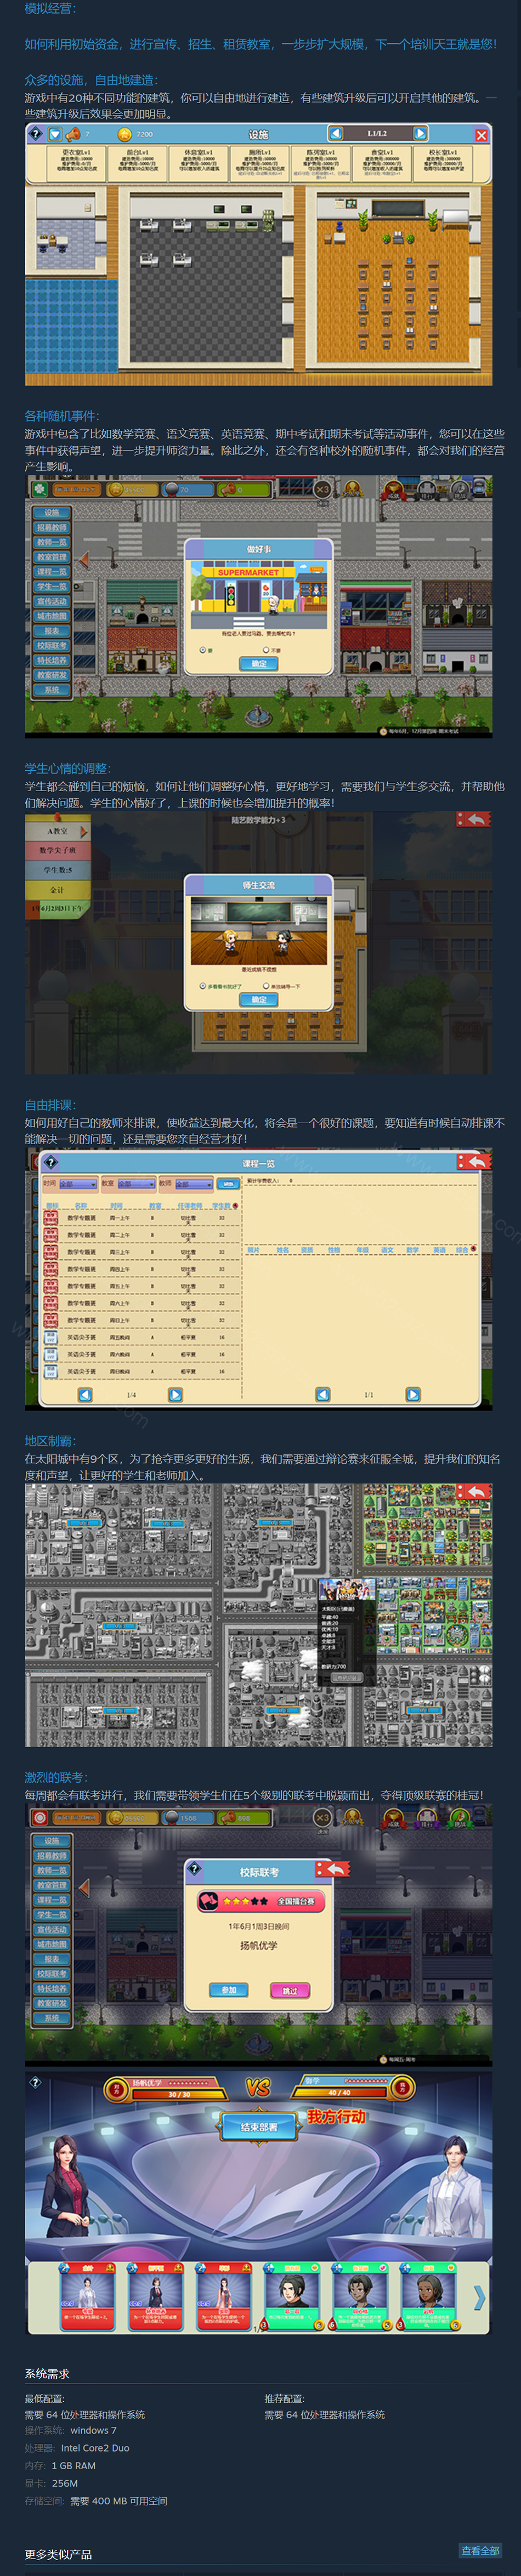 《太阳补习班》免安装-V1.0.6-(6-6)中文绿色版[270MB] 单机游戏 第7张